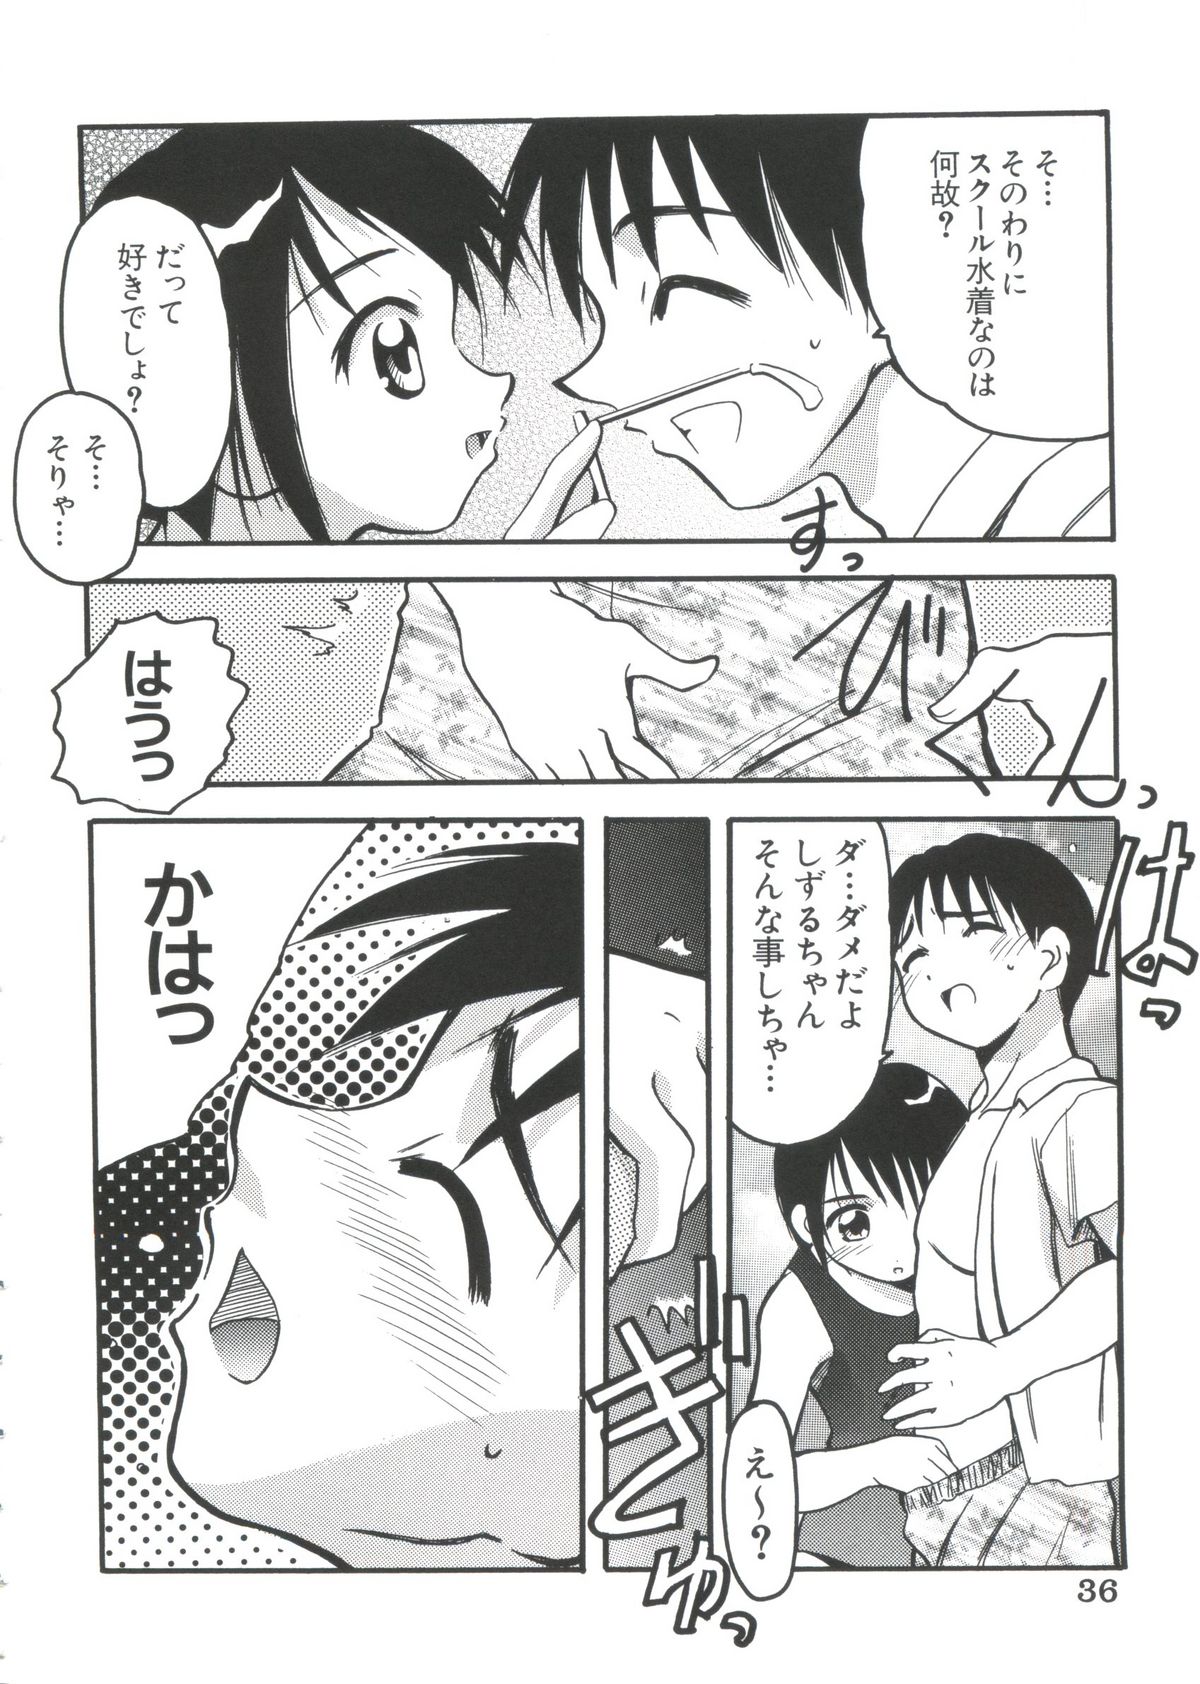 [doujinshi anthology] Chobi Hina Alpha 2 (Corrector Yui, Hand Maid May, Love Hina, Card Captor Sakura, Zoids) page 34 full